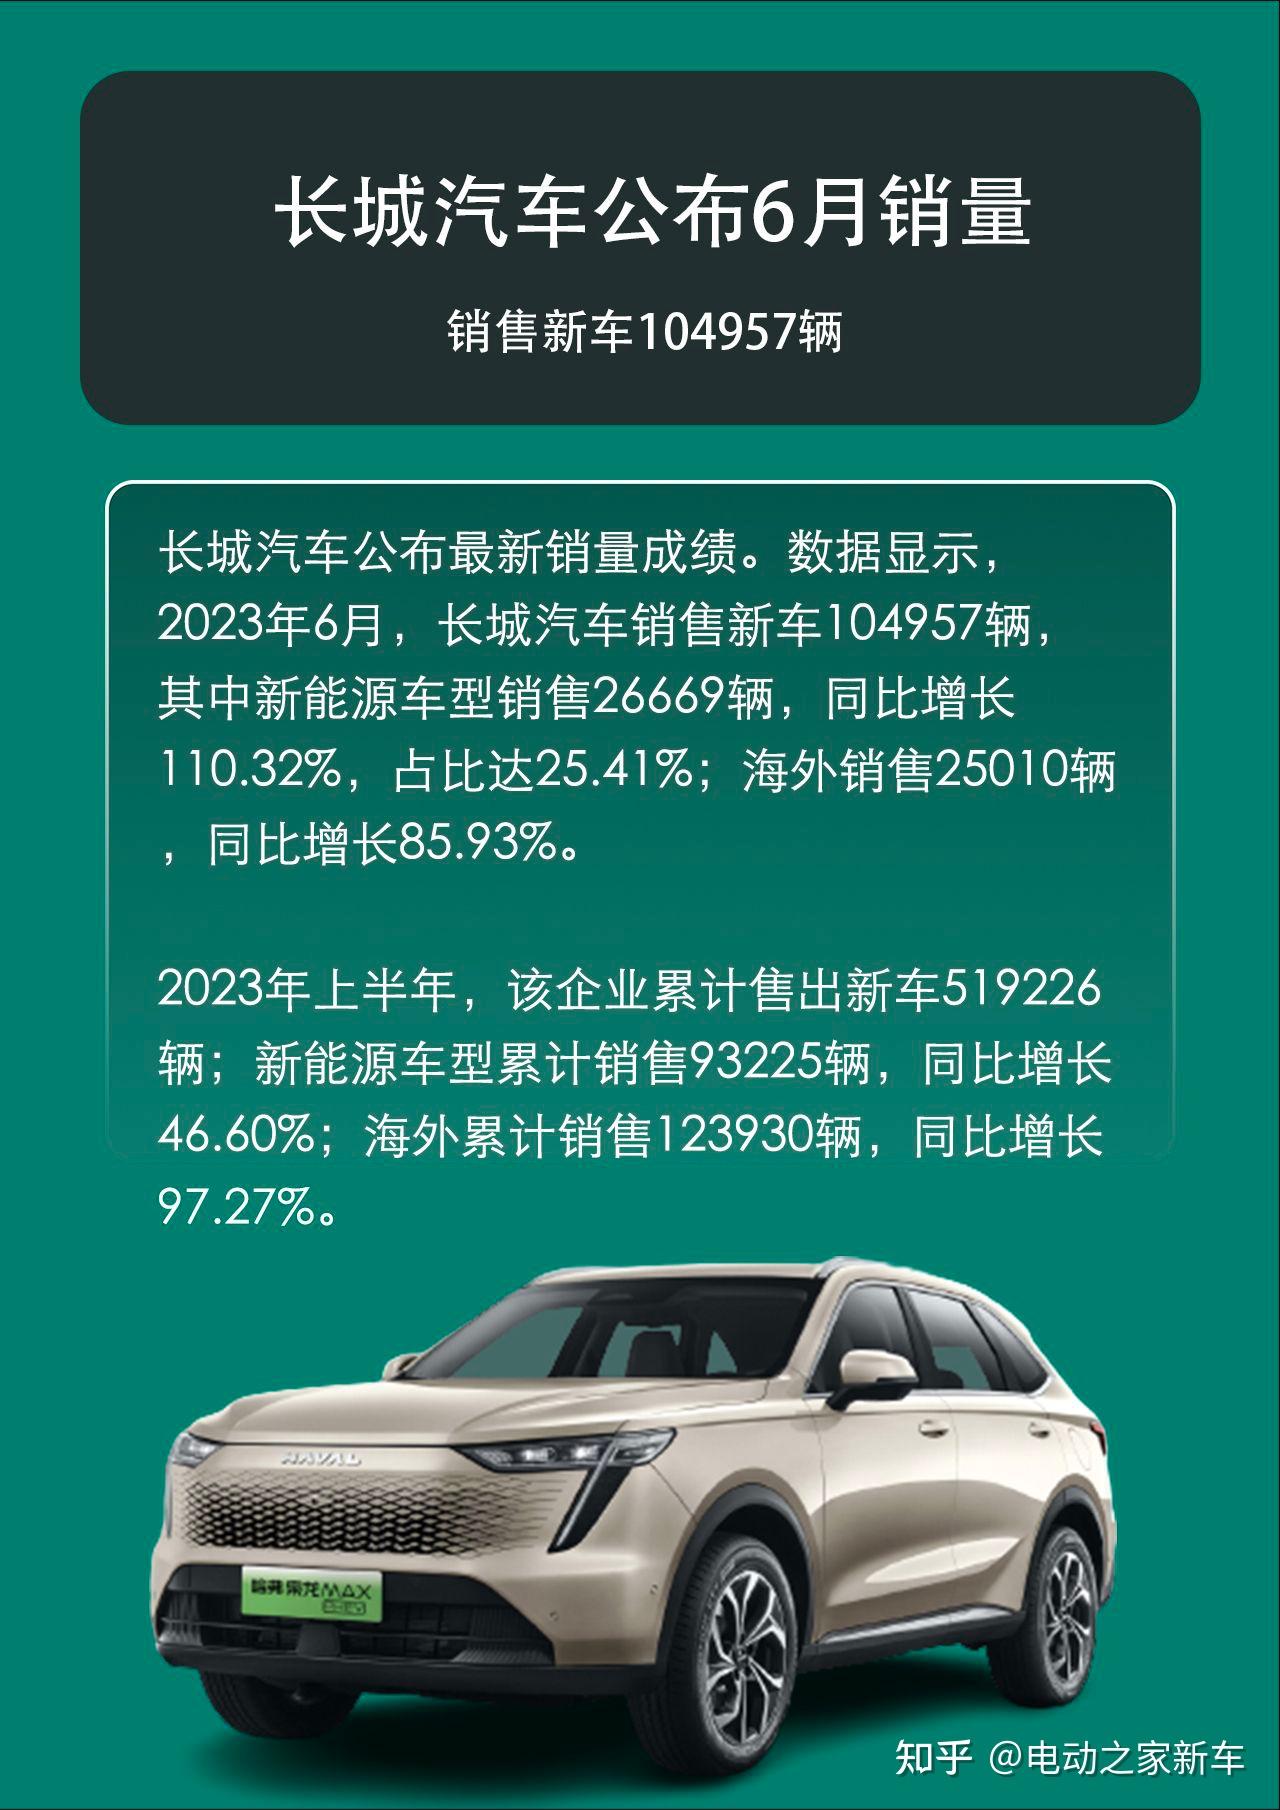 累计销售超 6 万辆 长城汽车公布 3 月销量_新闻_新出行